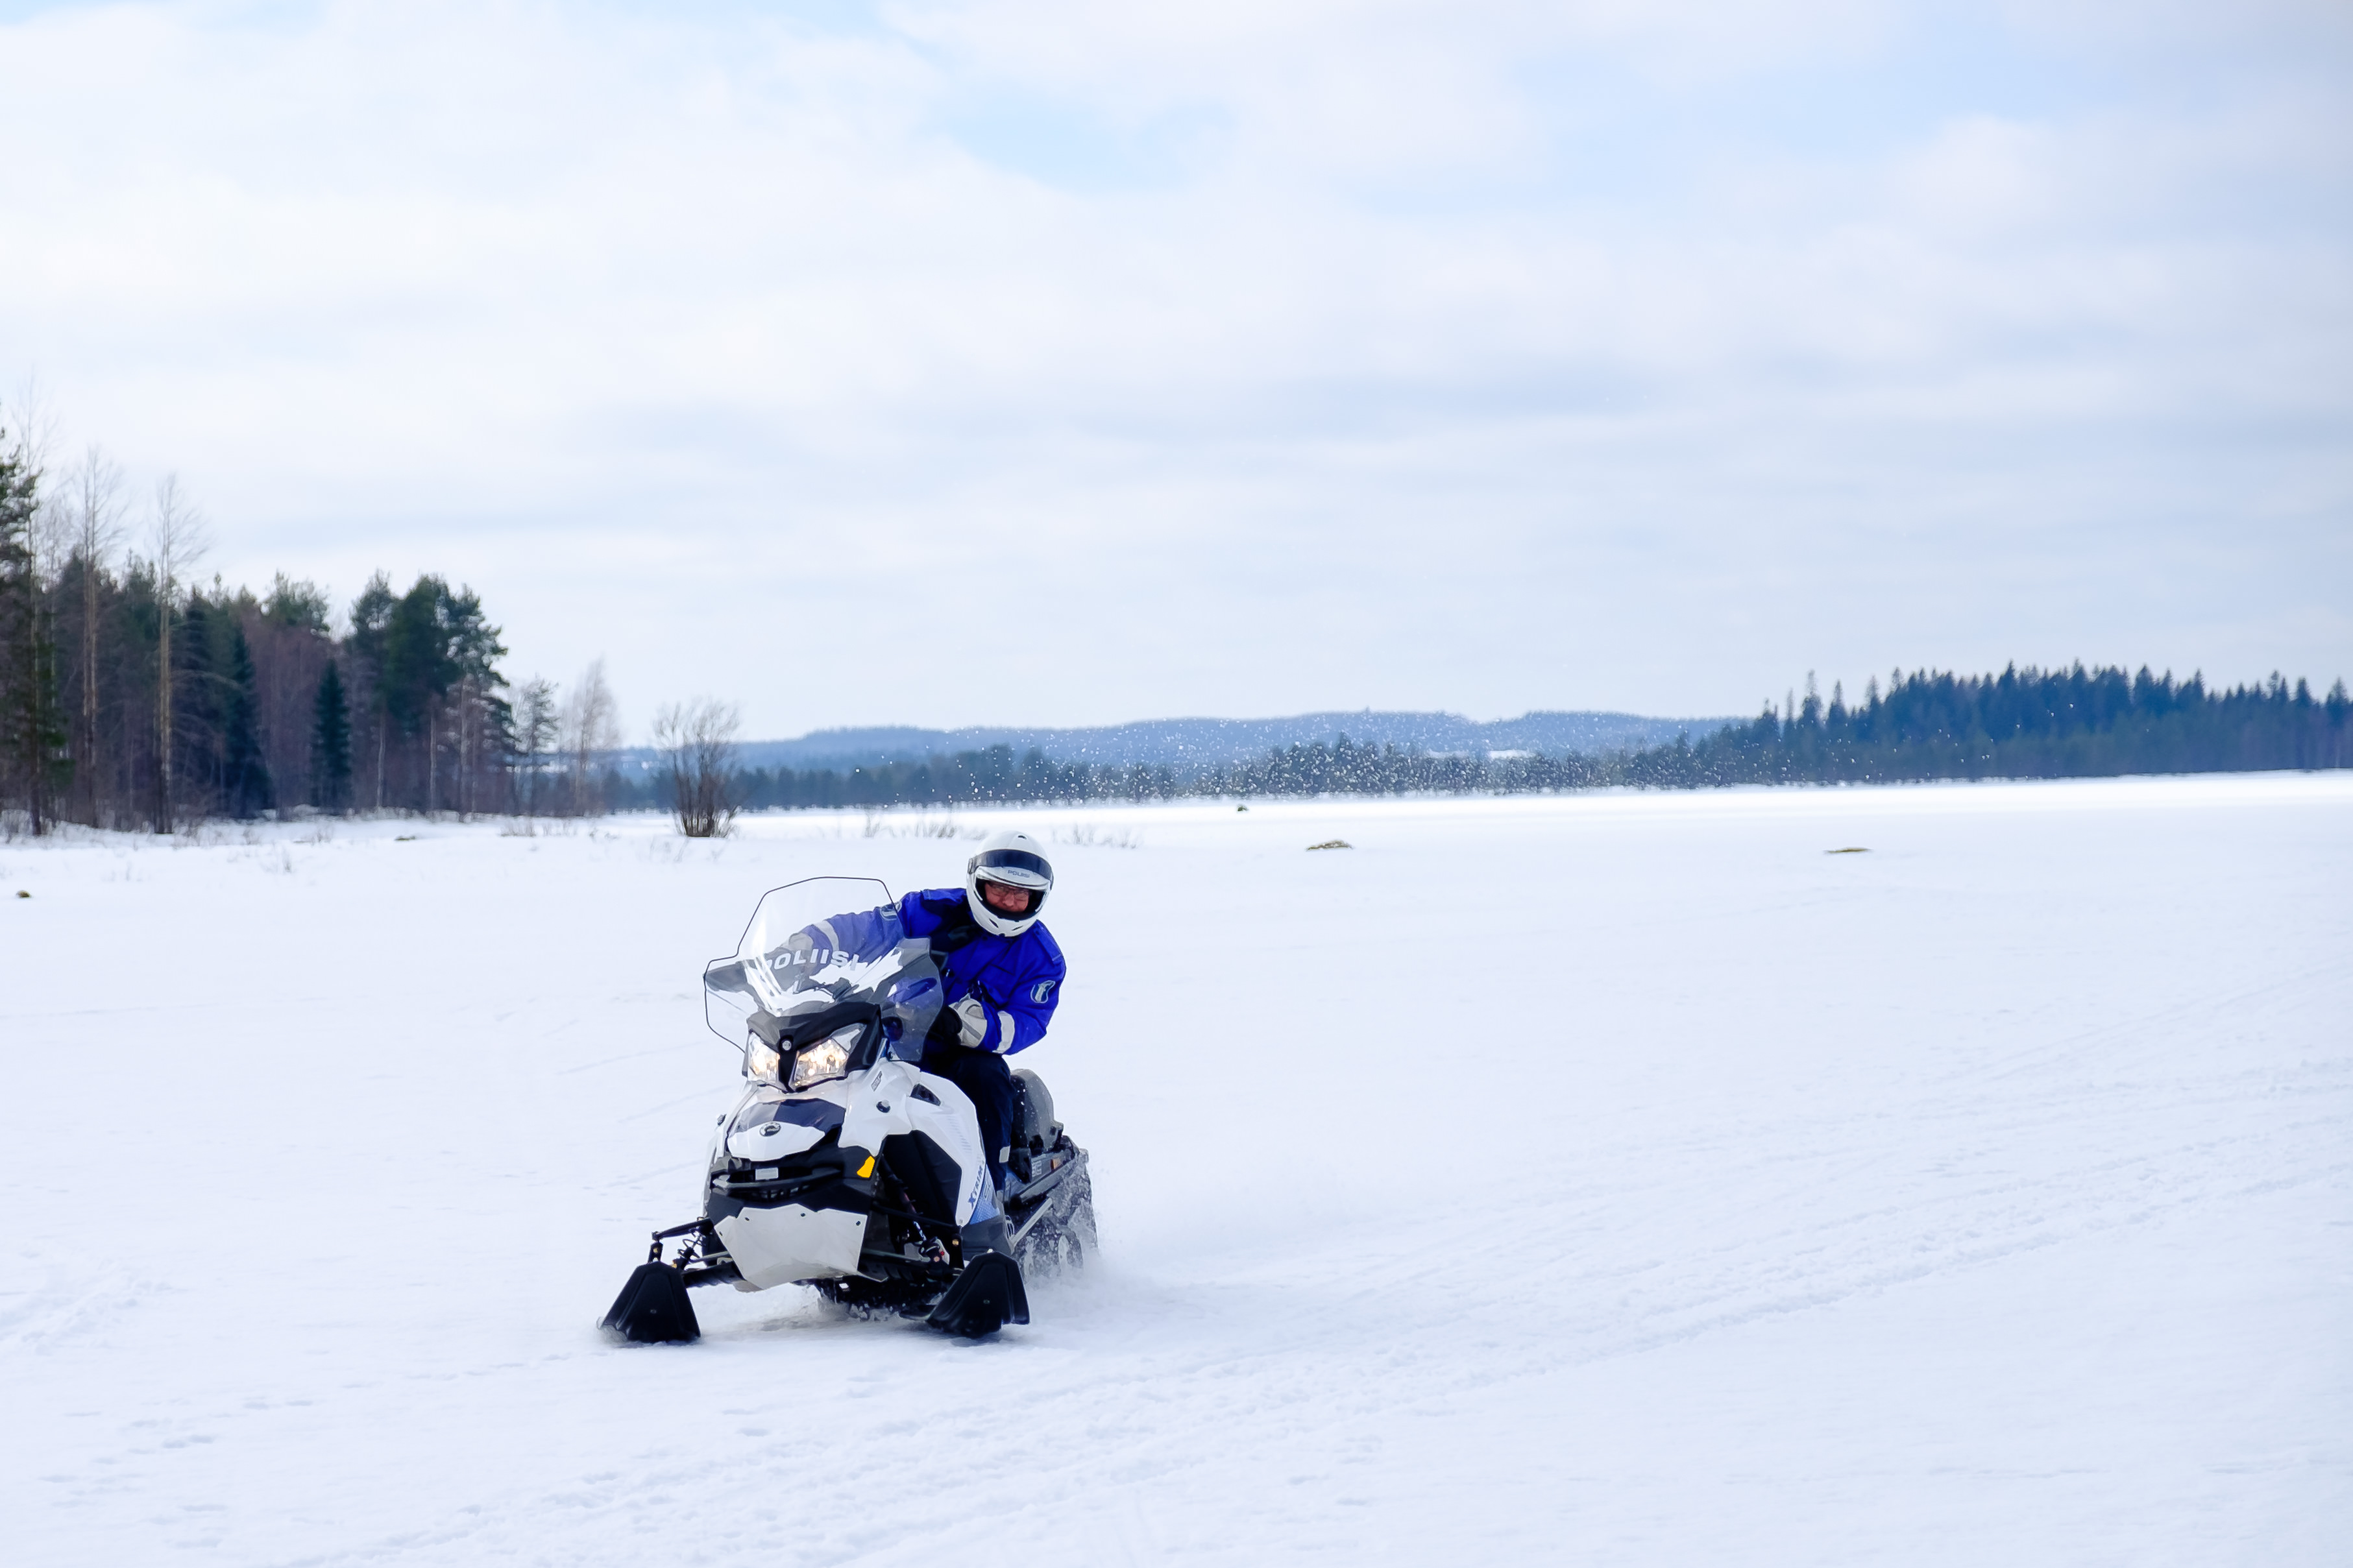 Poliisi ajaa moottorikelkalla lumisessa maastossa, mahdollisesti järven jäällä.